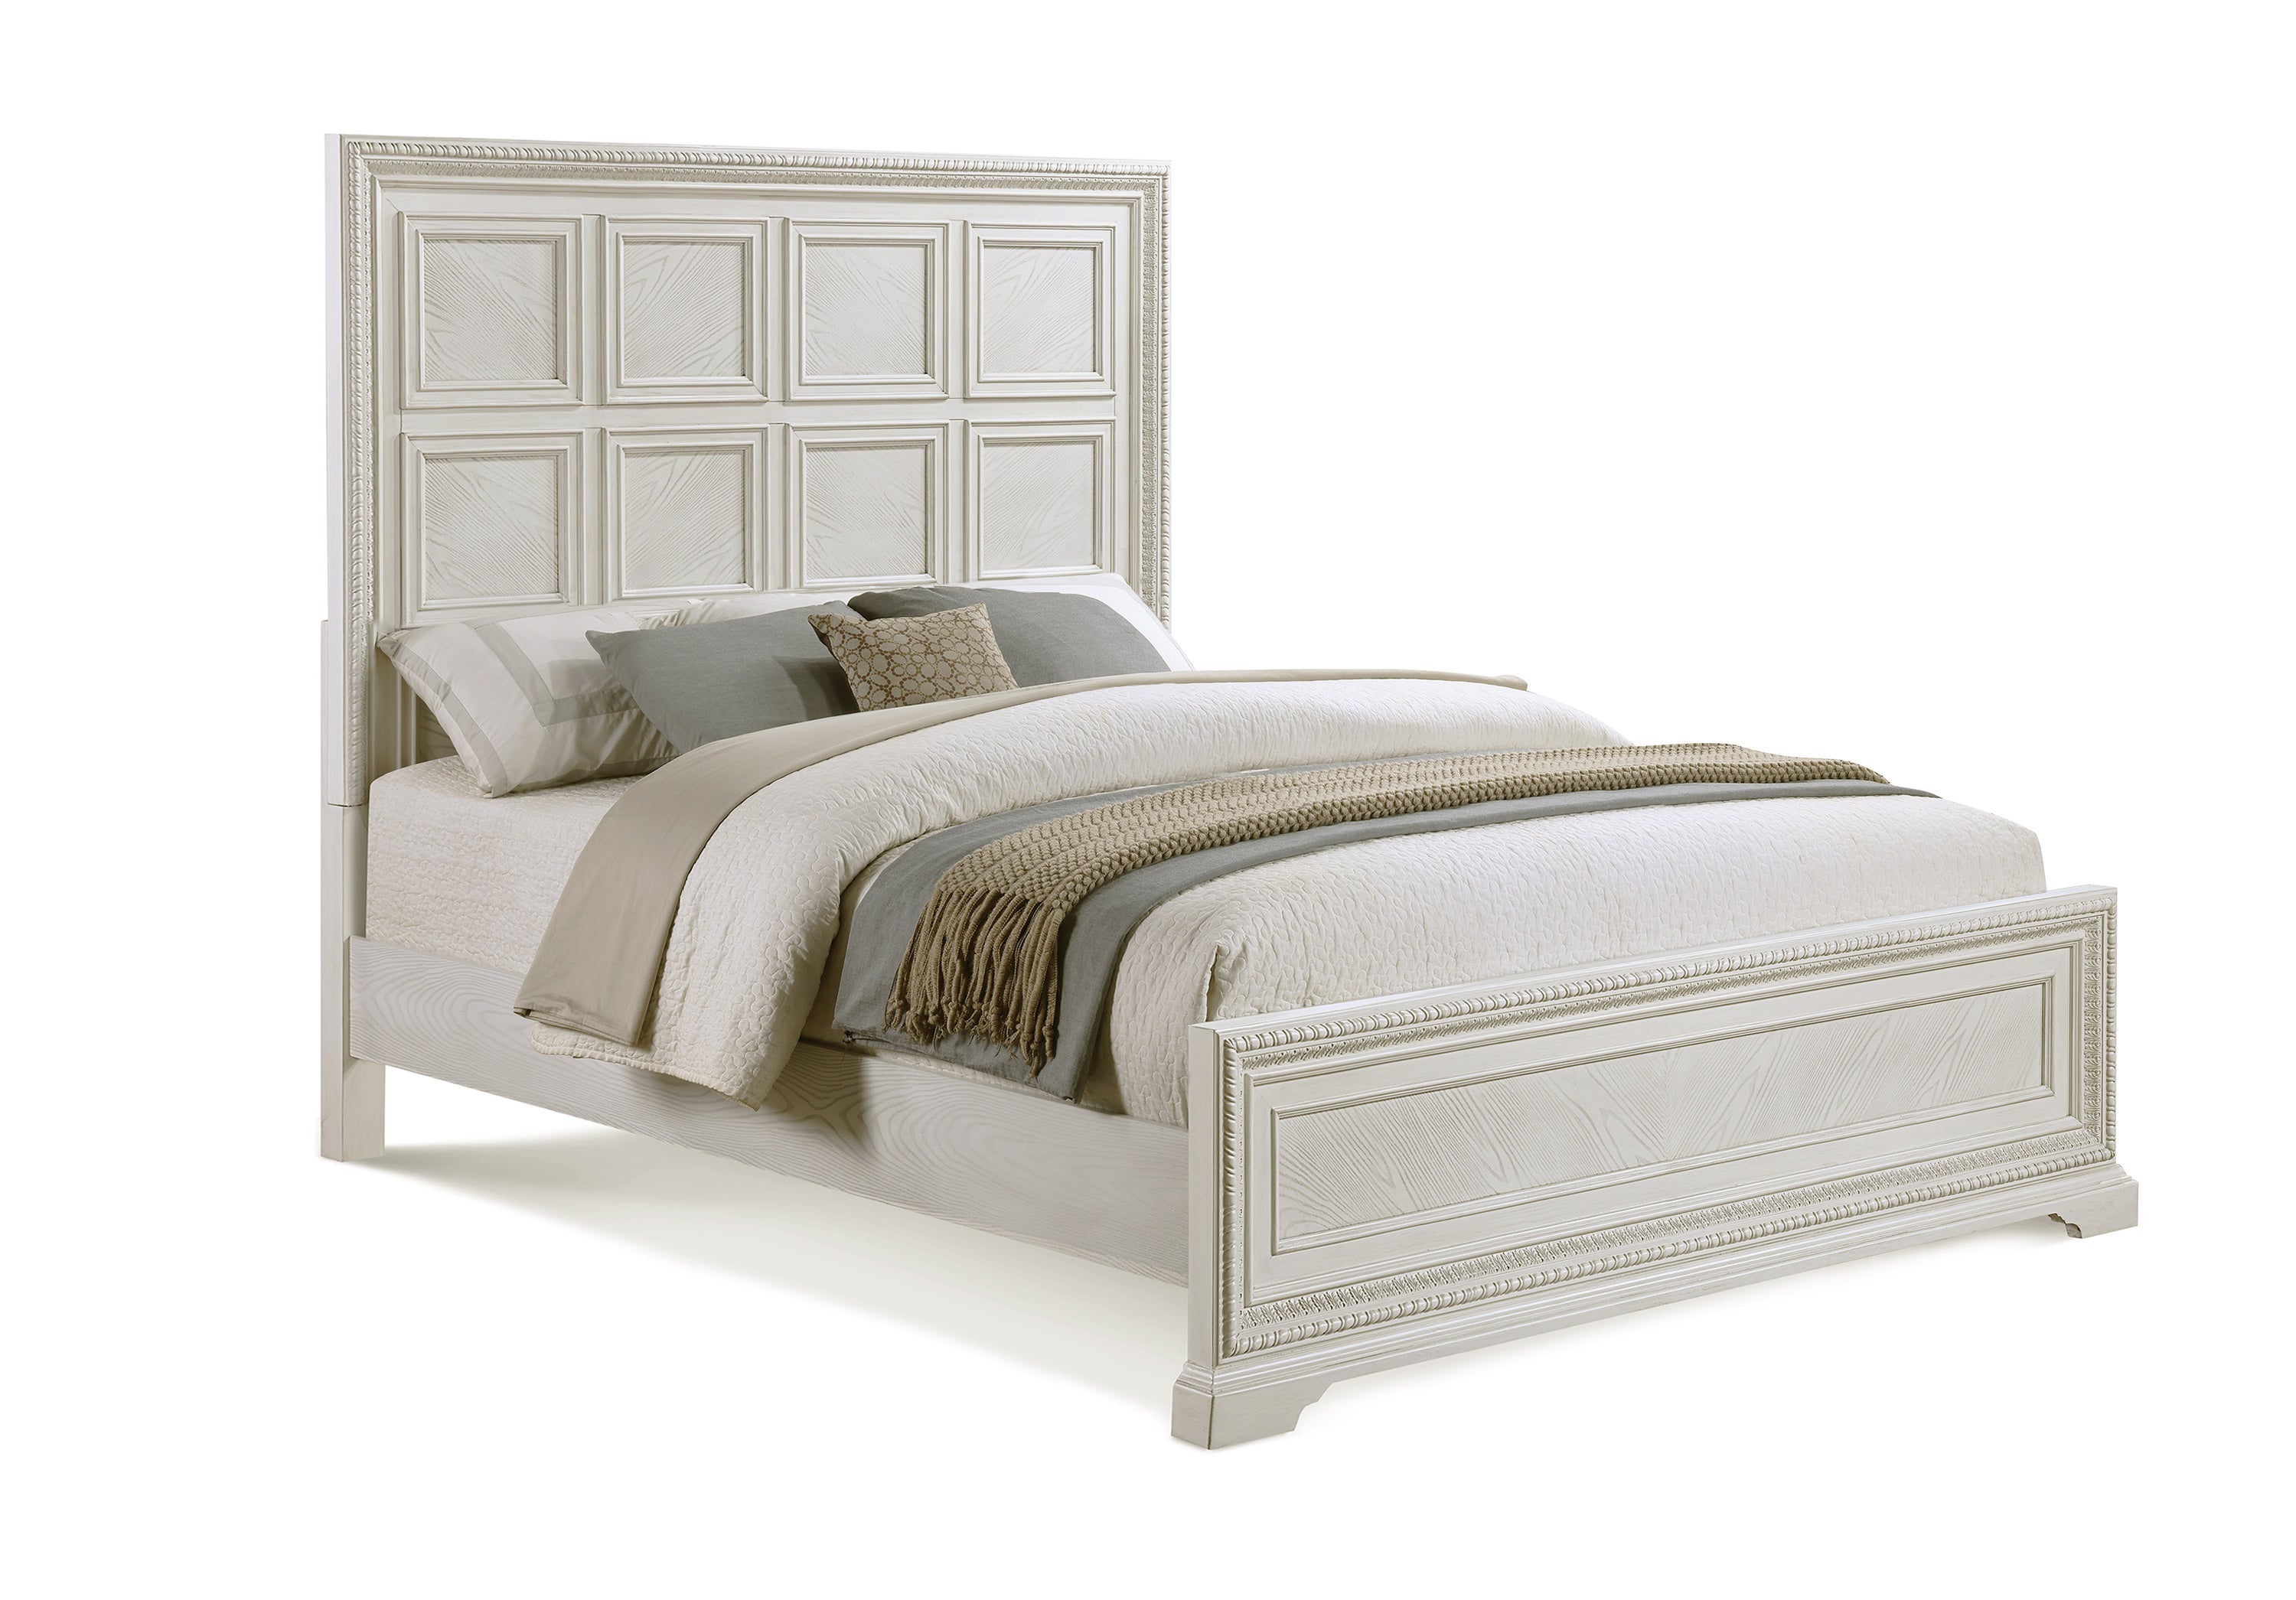 Alexandria Whitewash Panel Bedroom Set - SET | B1650-Q-HB | B1650-Q-FB | B1650-KQ-RAIL | B1650-2 | B1650-4